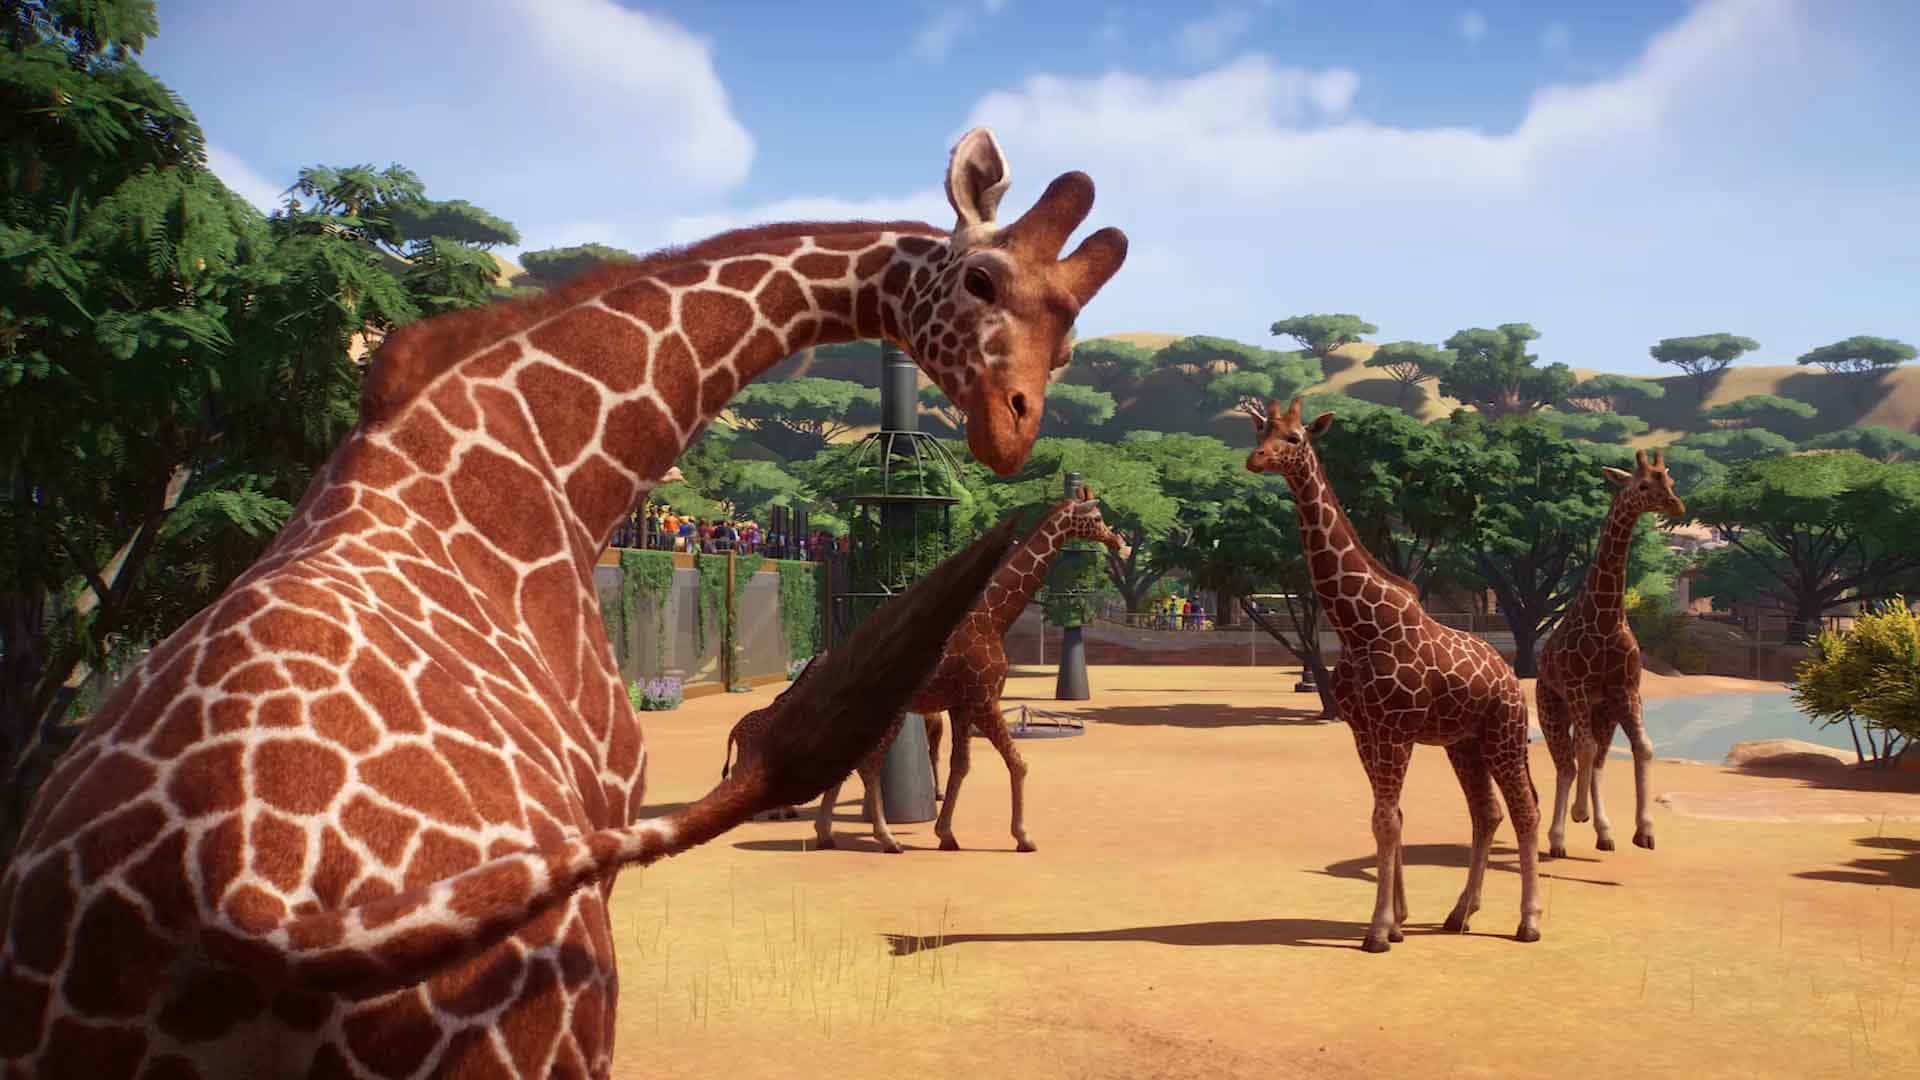 到目前为止，非洲提供了最多的最奇特的动物选择，长颈鹿是动物园的经典。